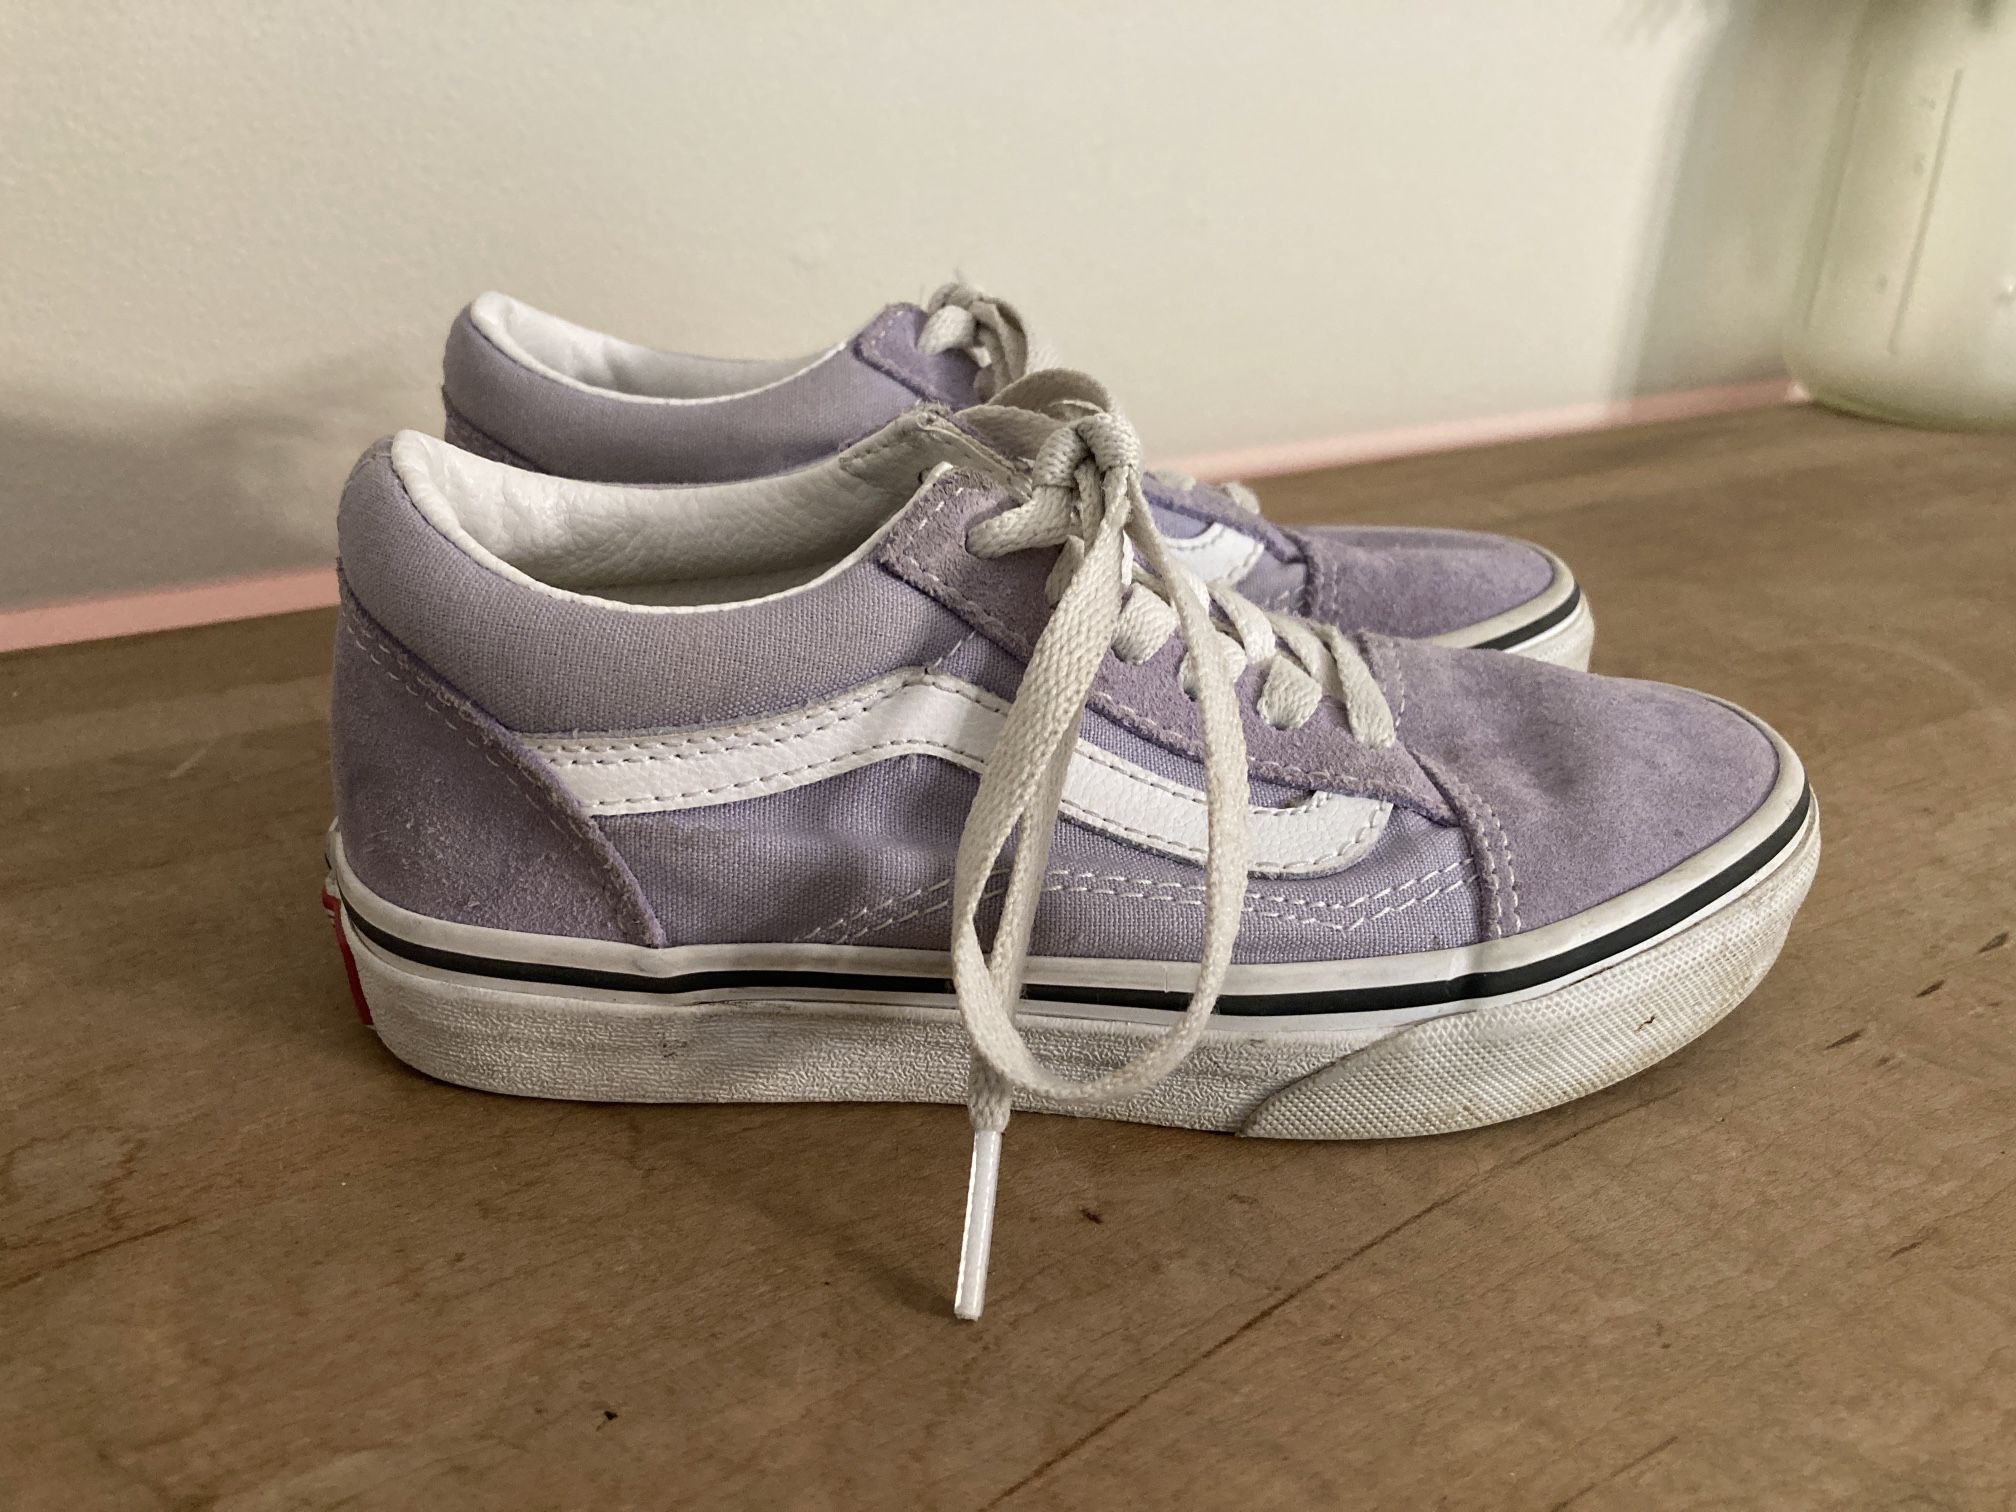 Vans 13.5 girls kids purple lavender sneakers shoes